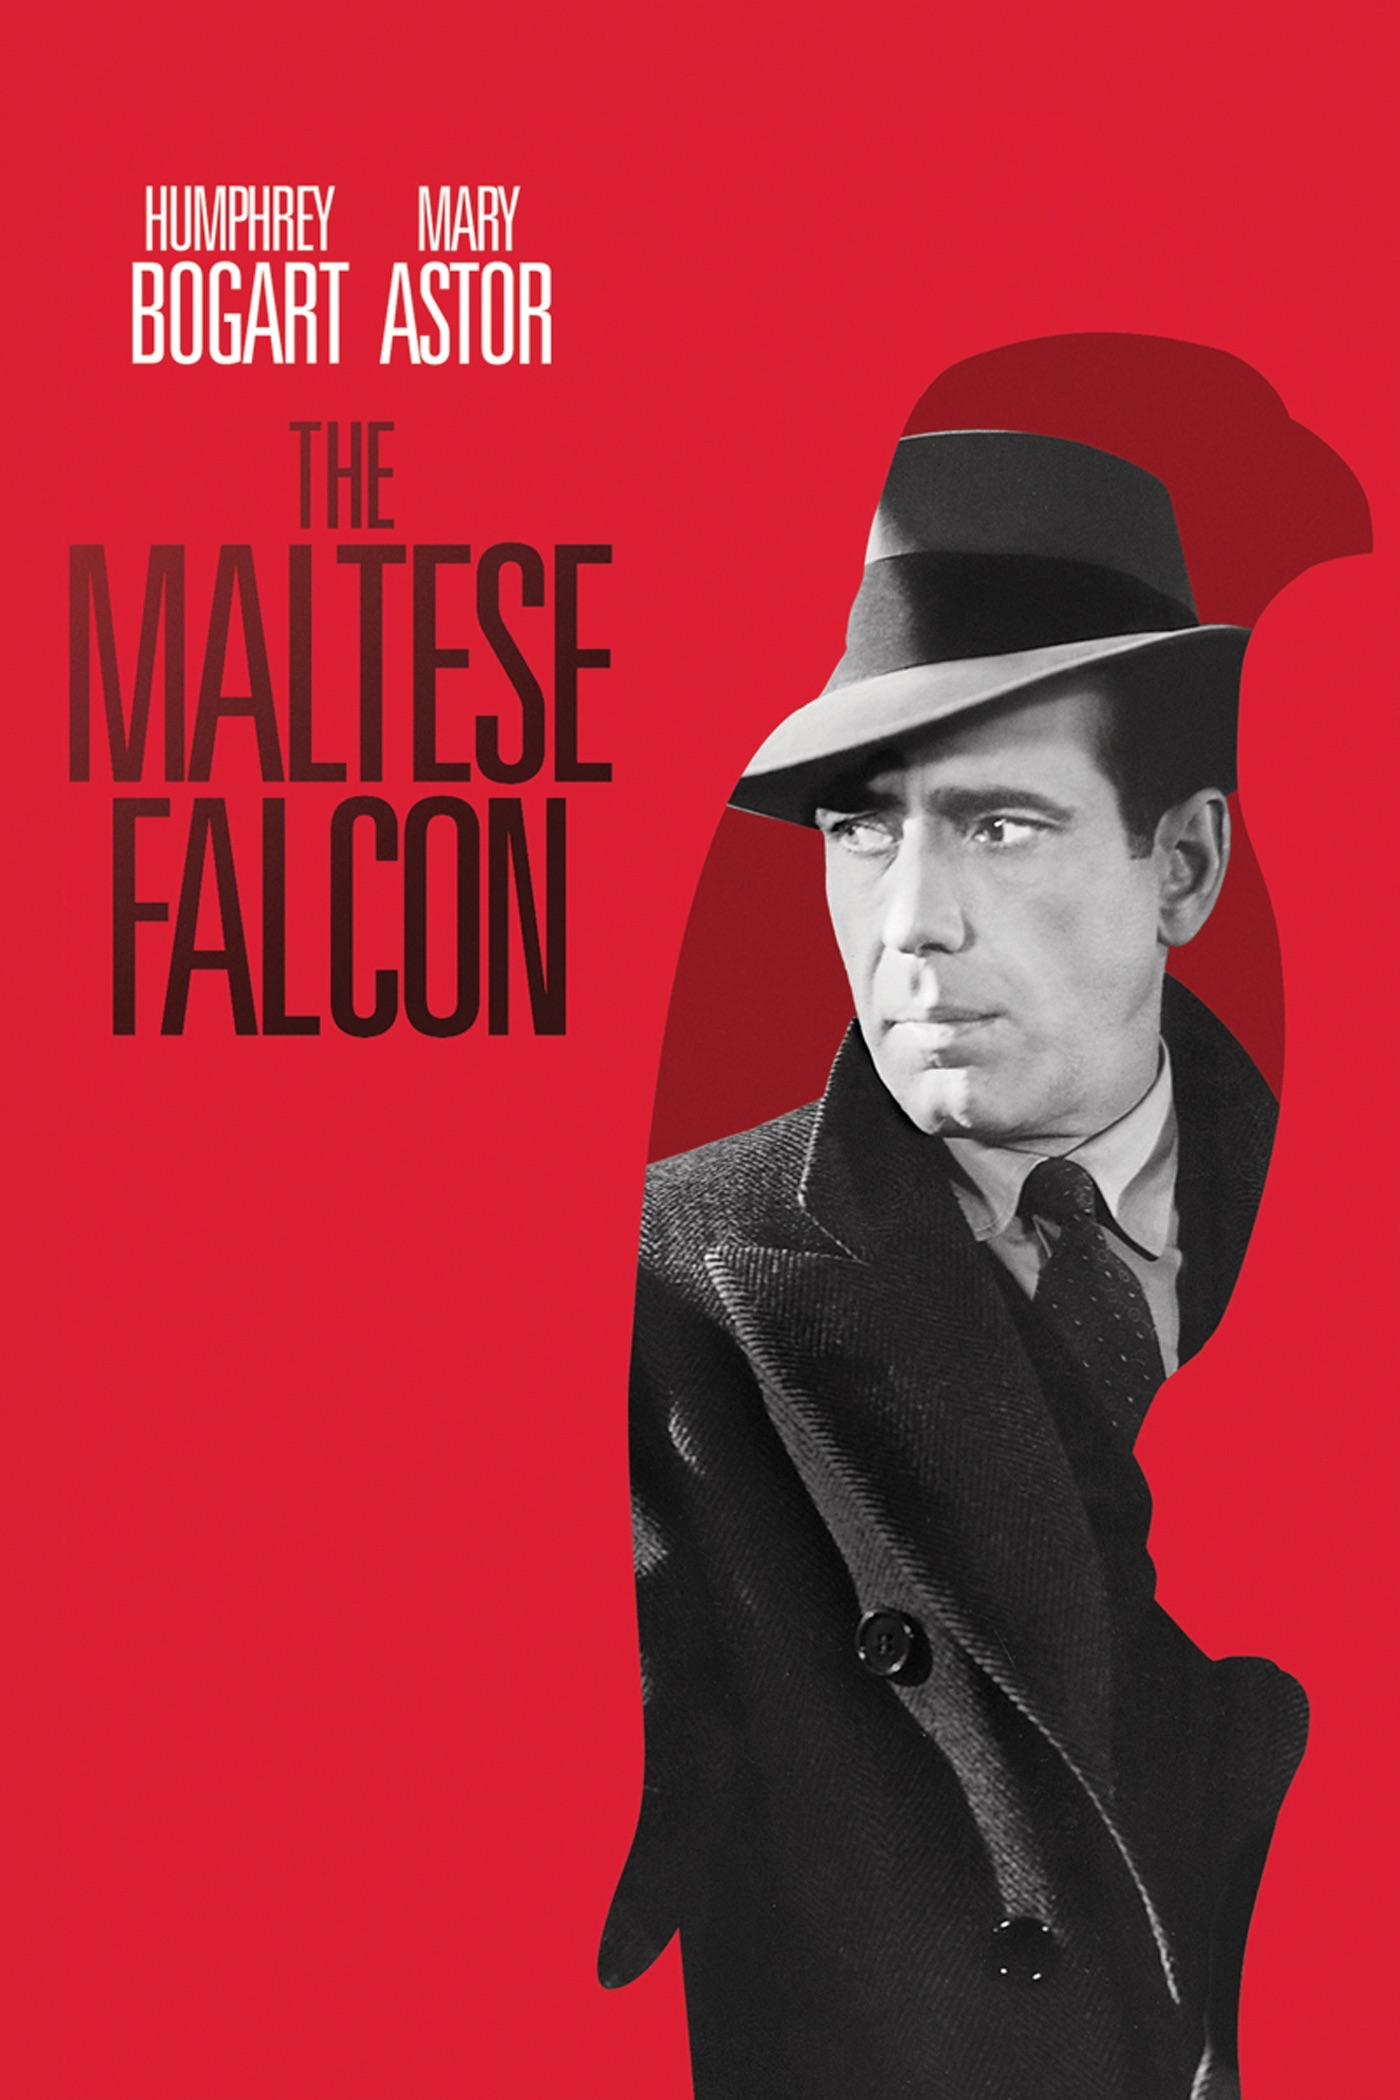 The Gay Falcon [1941]